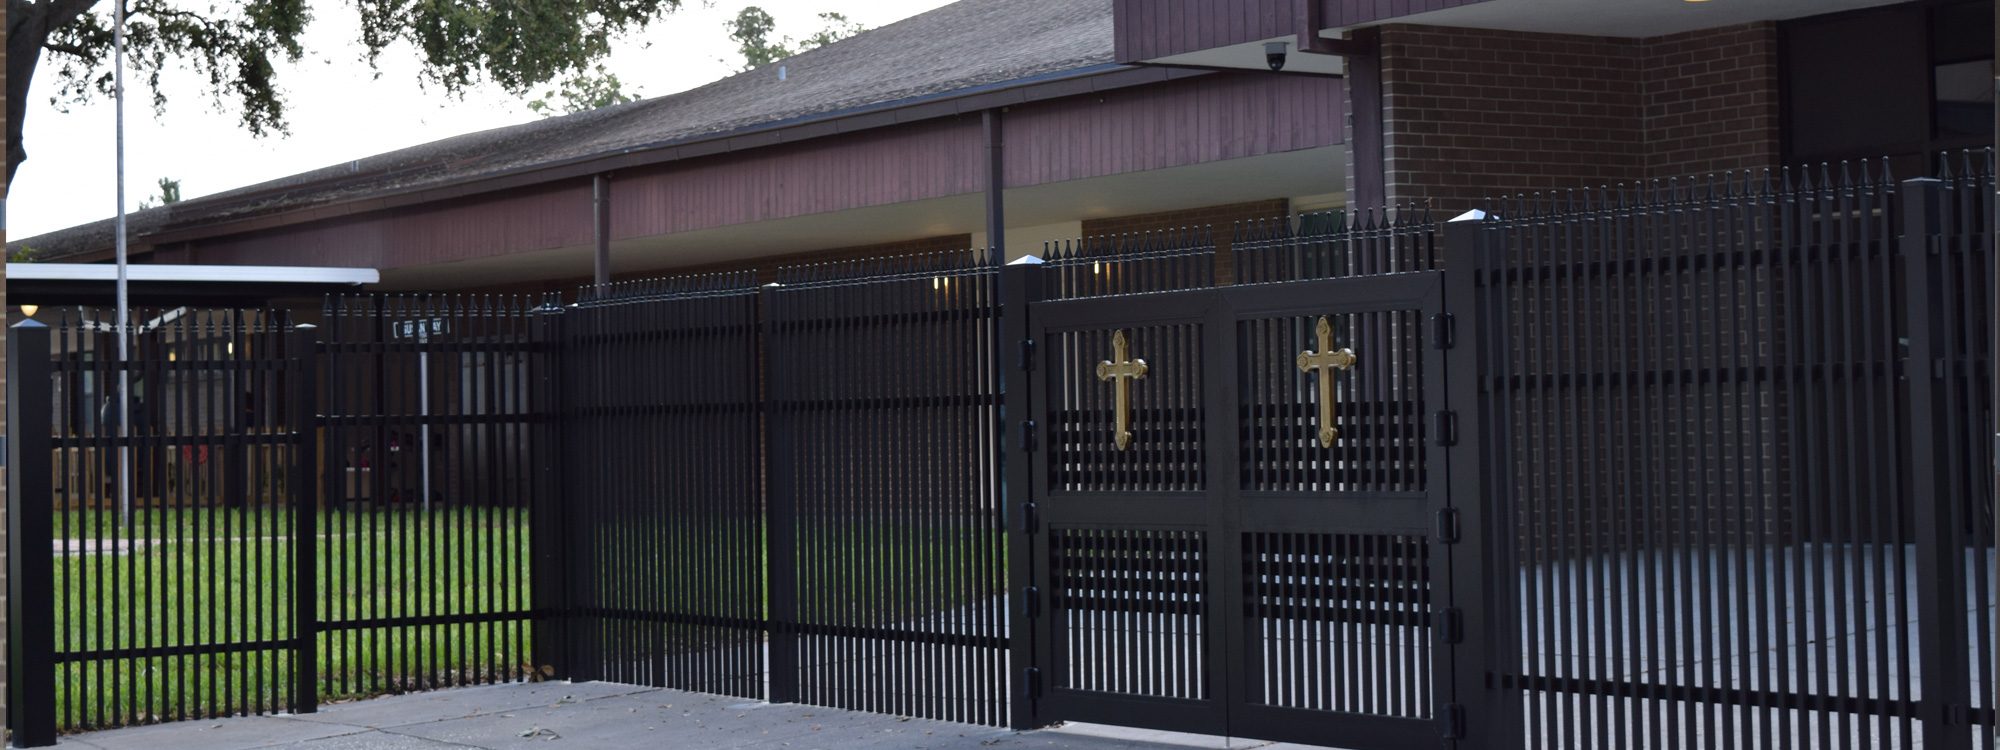 Catholic school entrance